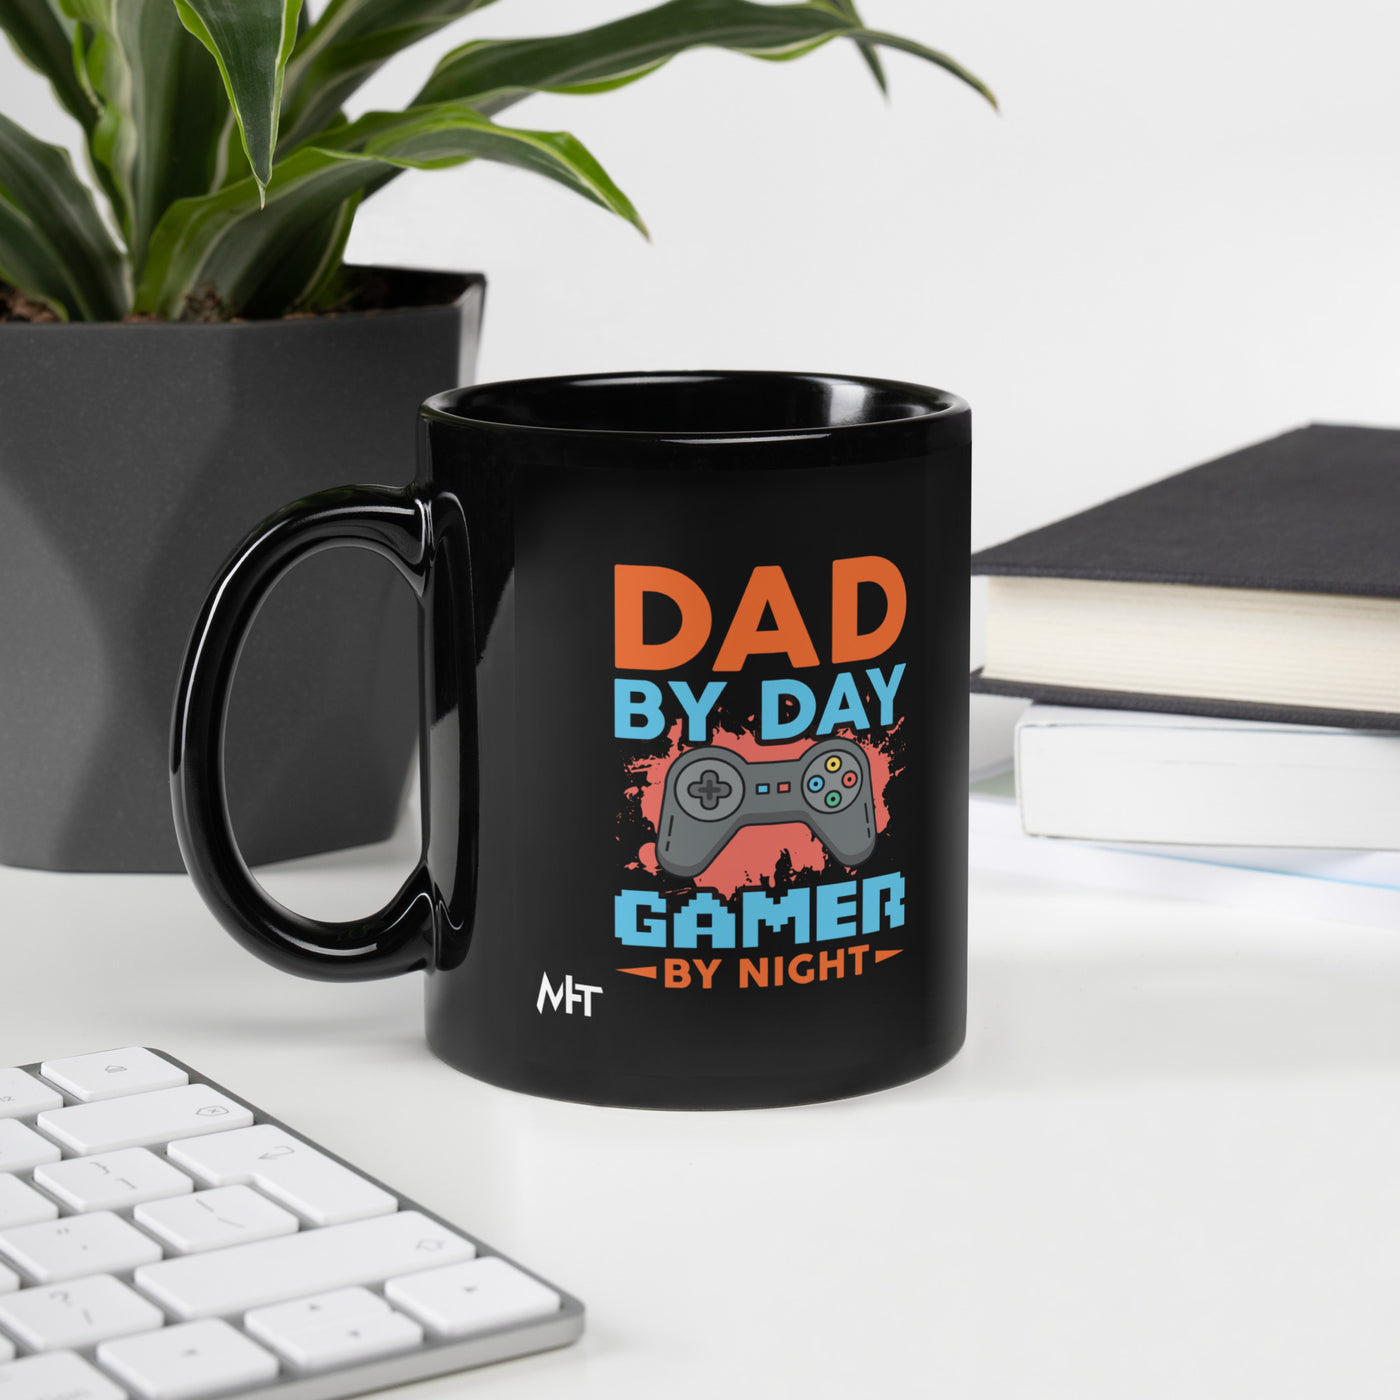 Dad by Day, Gamer by Night - Black Glossy Mug